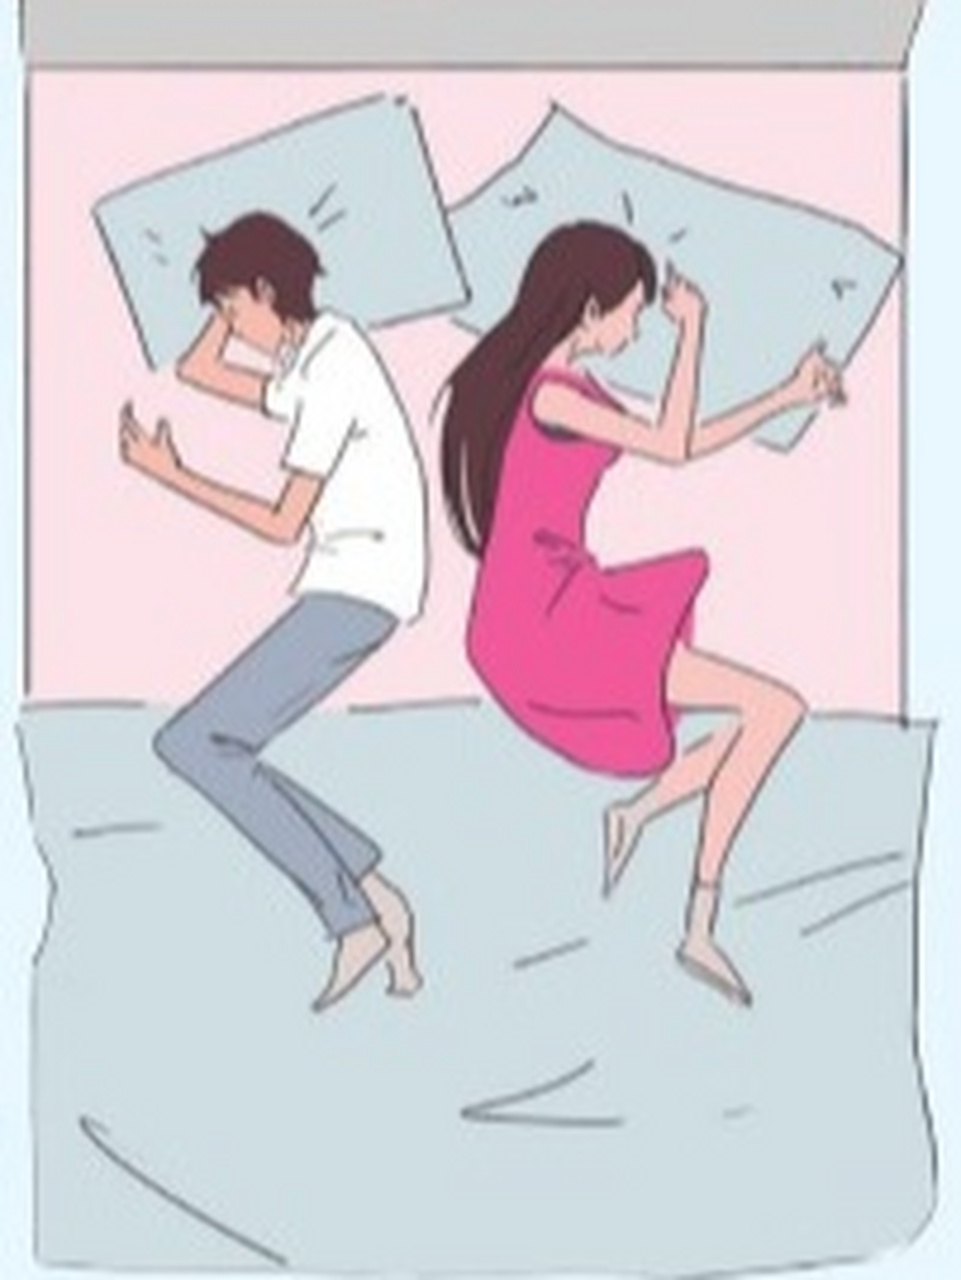 (一) 01 自由式 背靠背相互无接触 约27%的夫妇睡觉时会用这种姿势,在